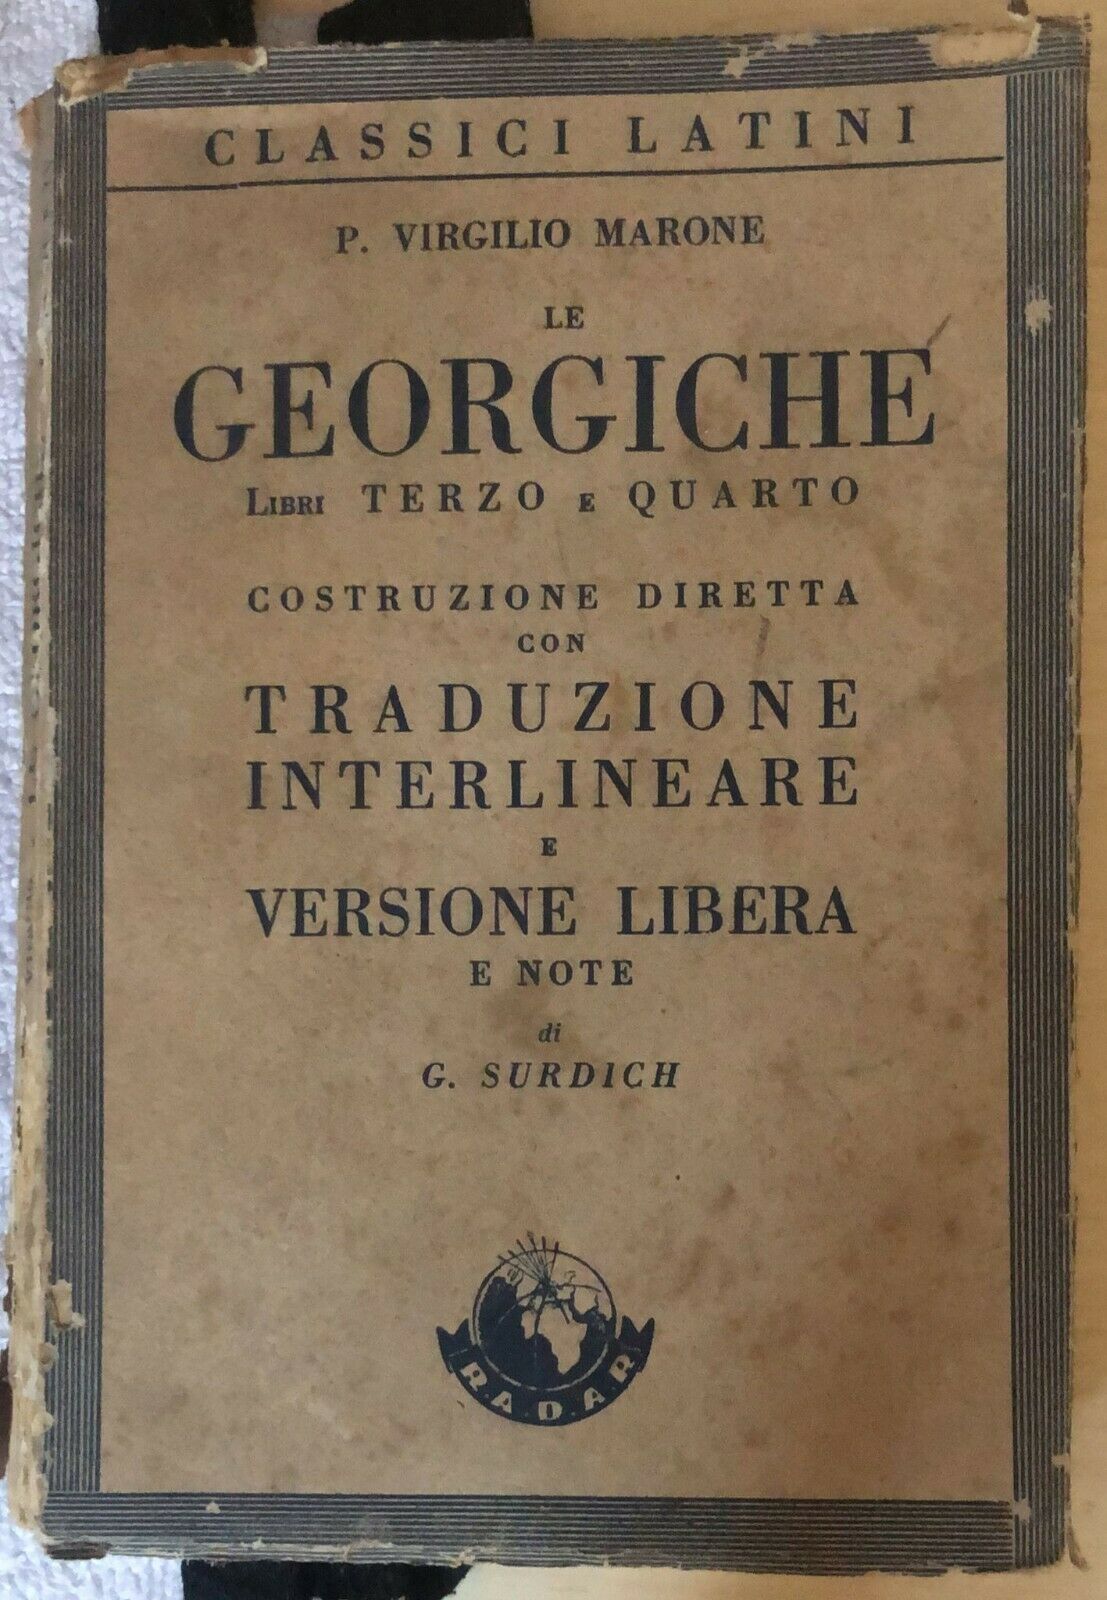 Le Georgiche, Libri 3 e 4 di P. Virgilio Marone,  1949,  Radar